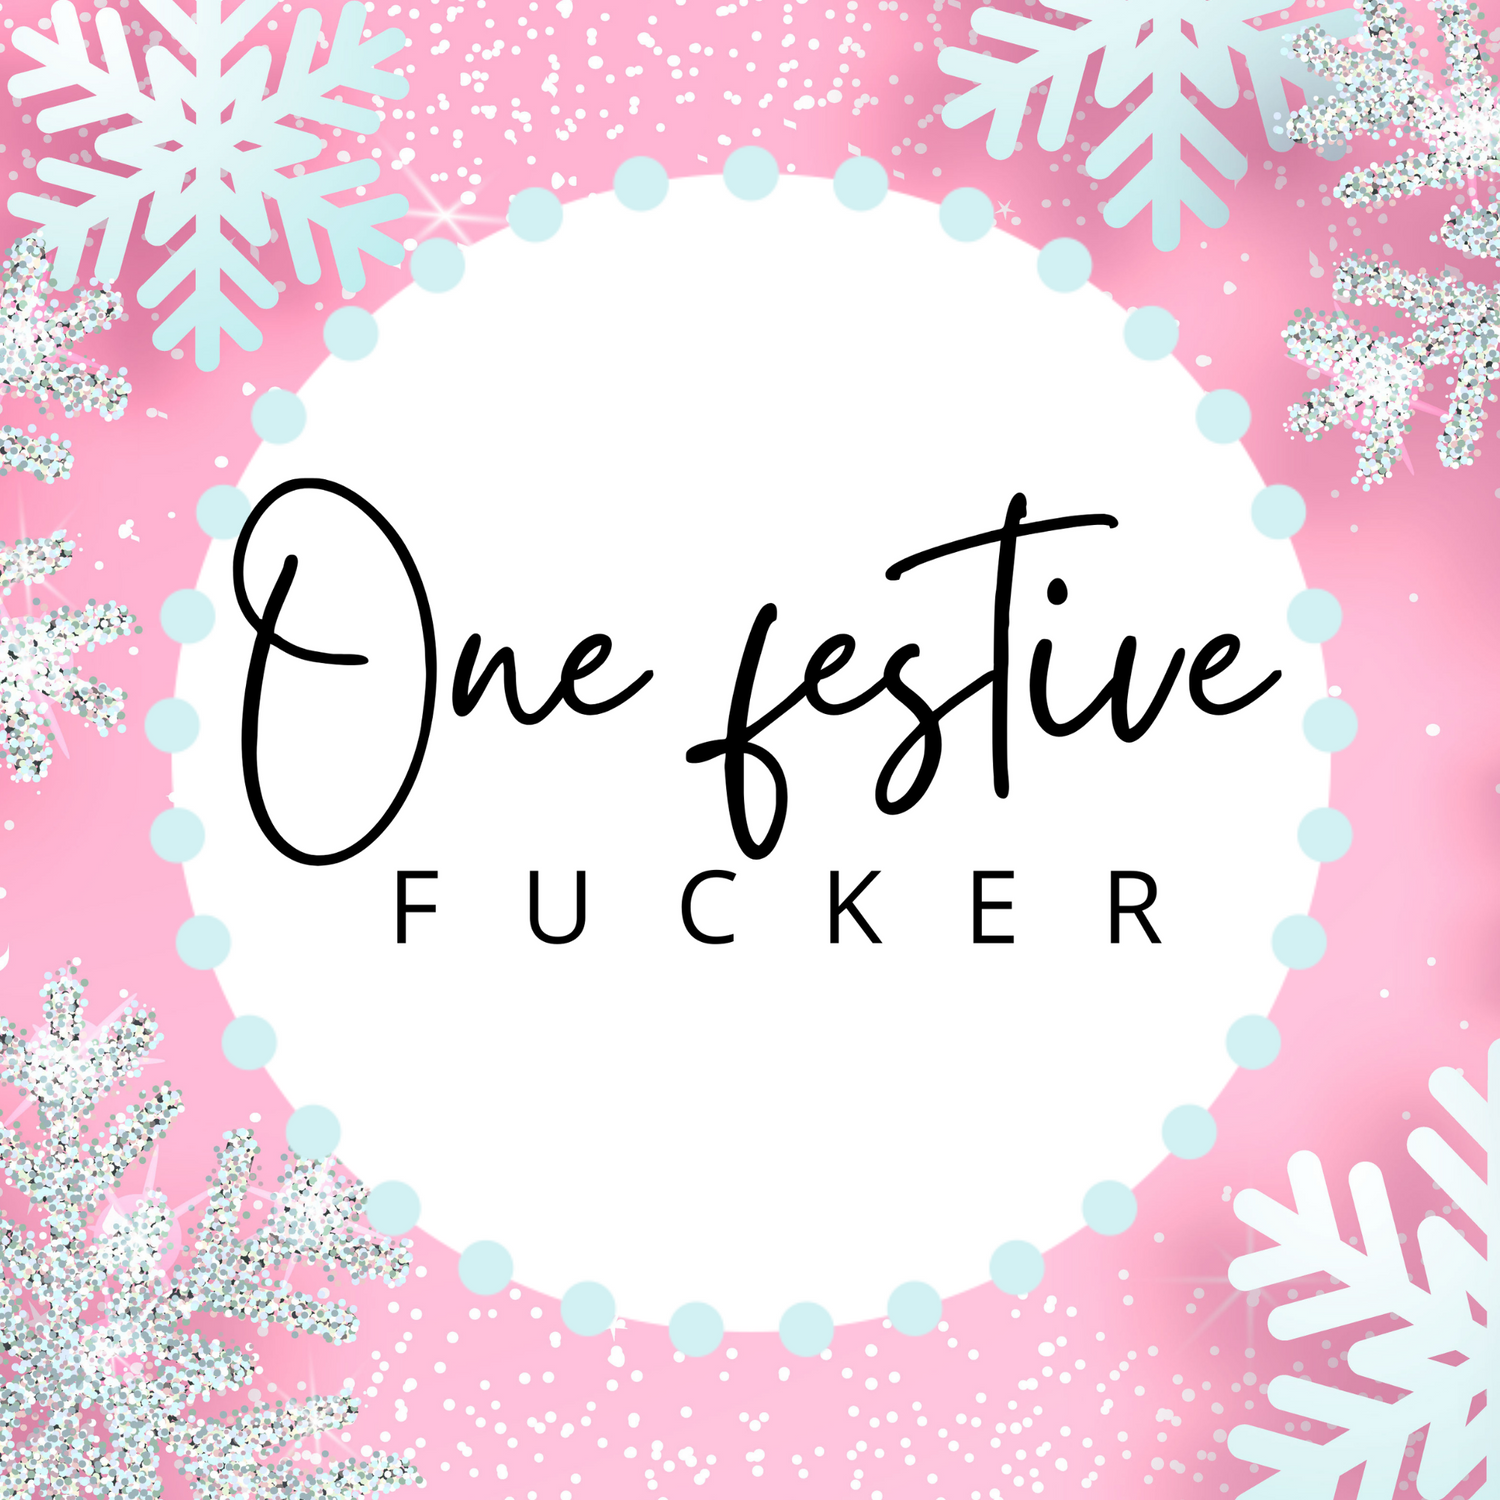 One Festive Fucker